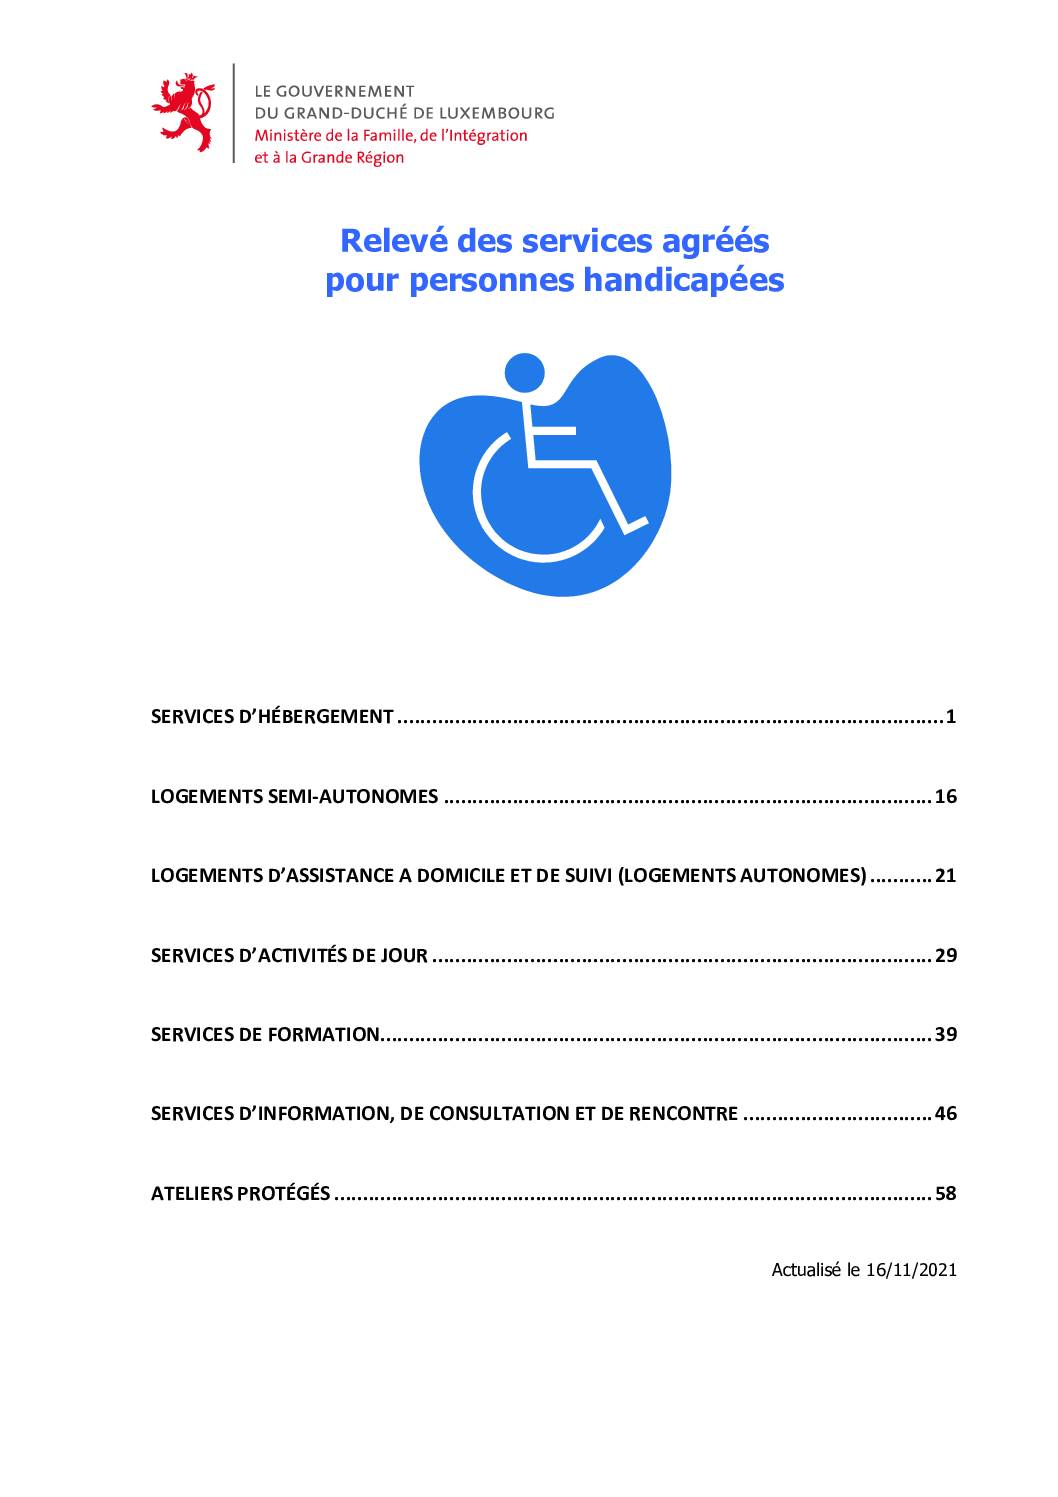 Releve-des-services-agrees-pour-personnes-handicapees-ACC